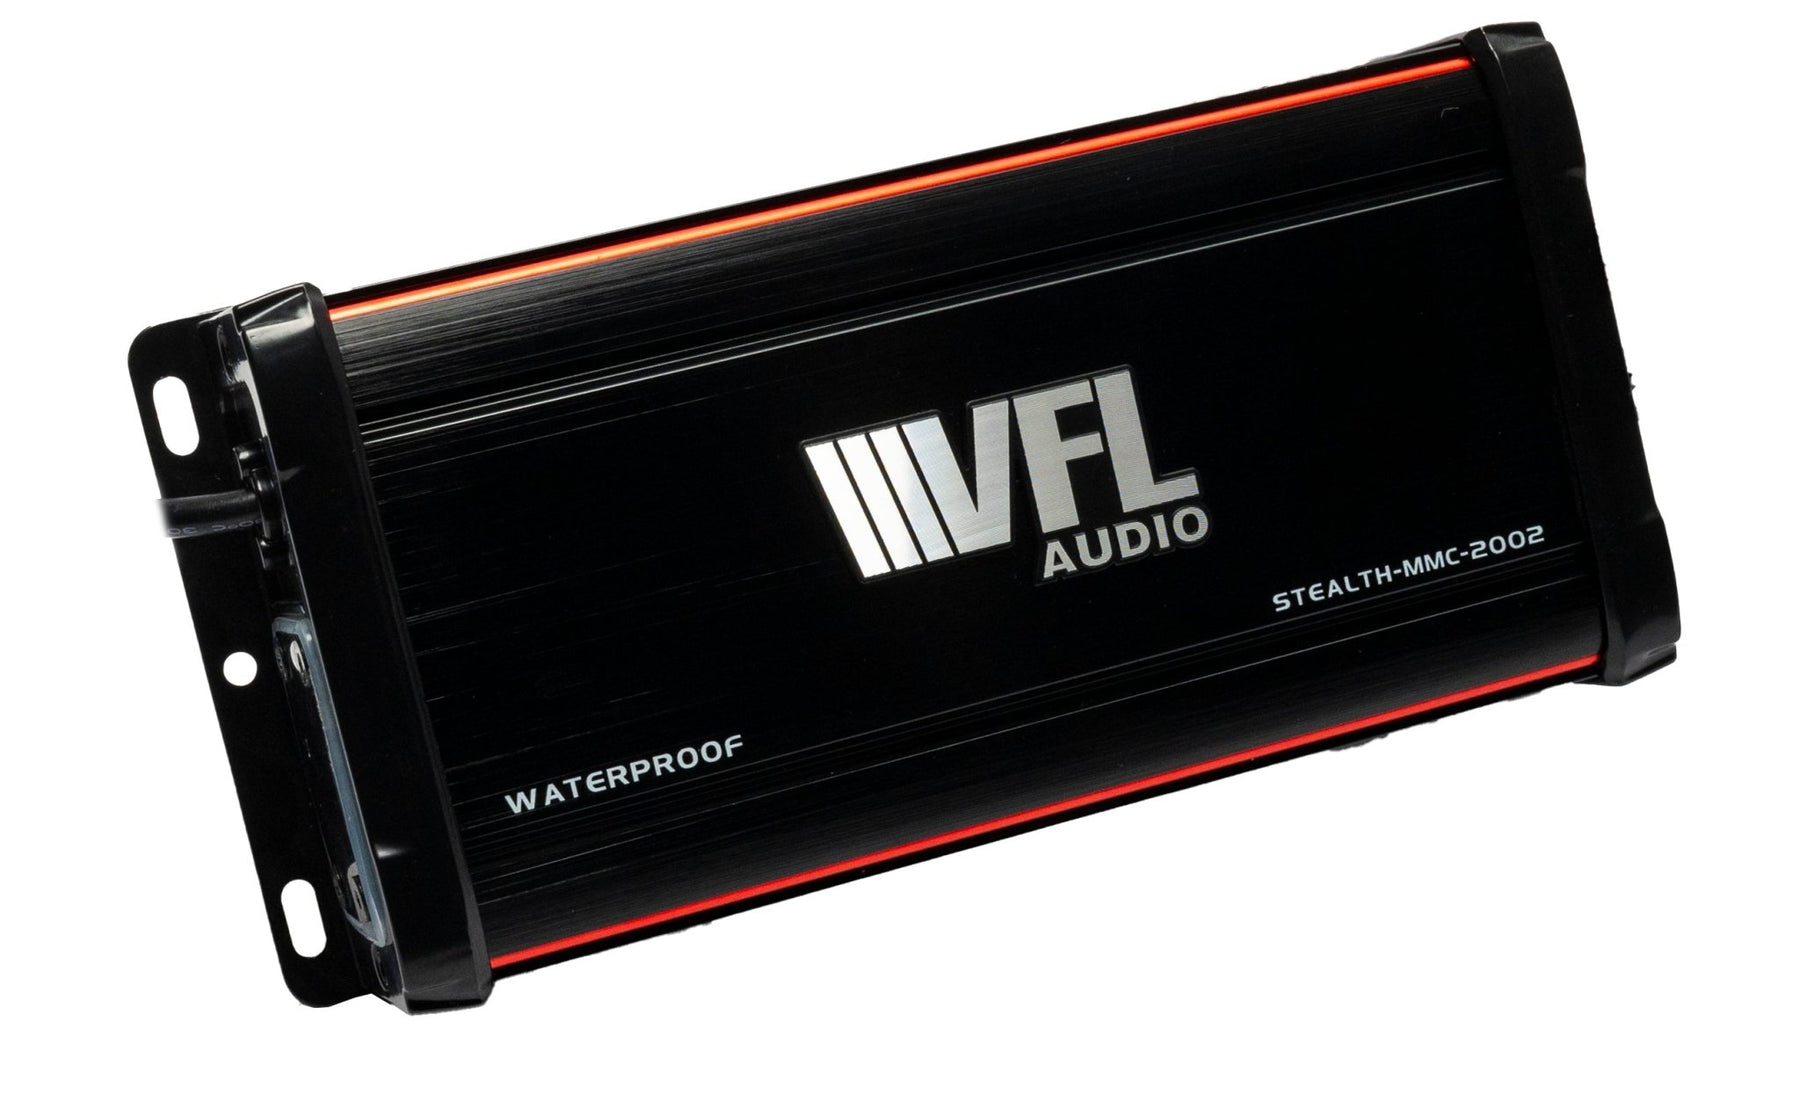 VFL Stealth MMC 2002 Amplifier - American Bass Audio